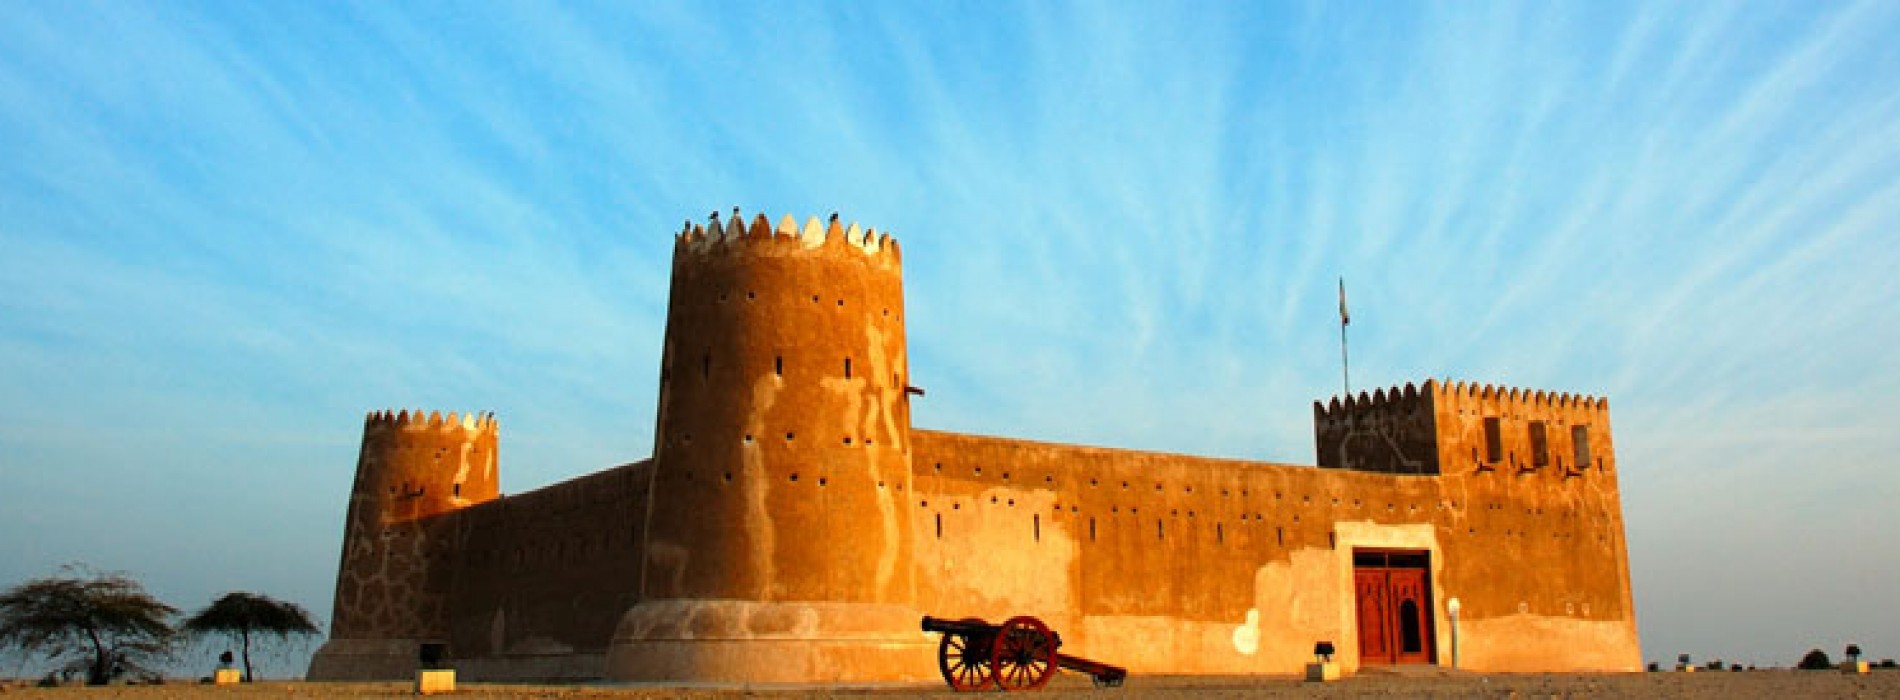 Qatar Destination Brand launches at World Travel Market